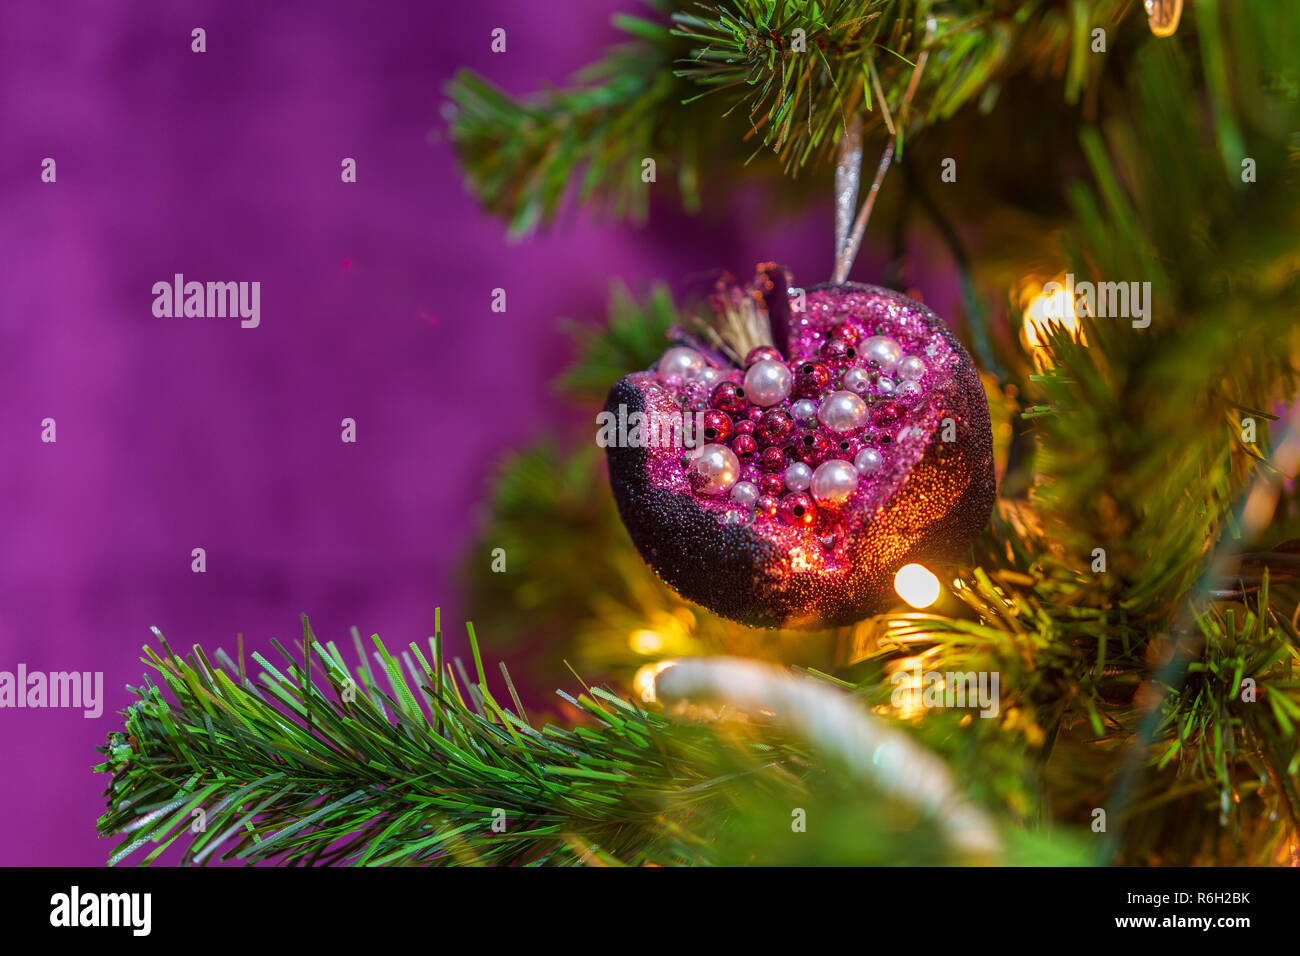 Nahaufnahme einer Weihnachtsbaum in einem lila Thema mit einem prominenten lila Granatapfel hängende Dekoration in Sicht eingerichtet Stockfoto